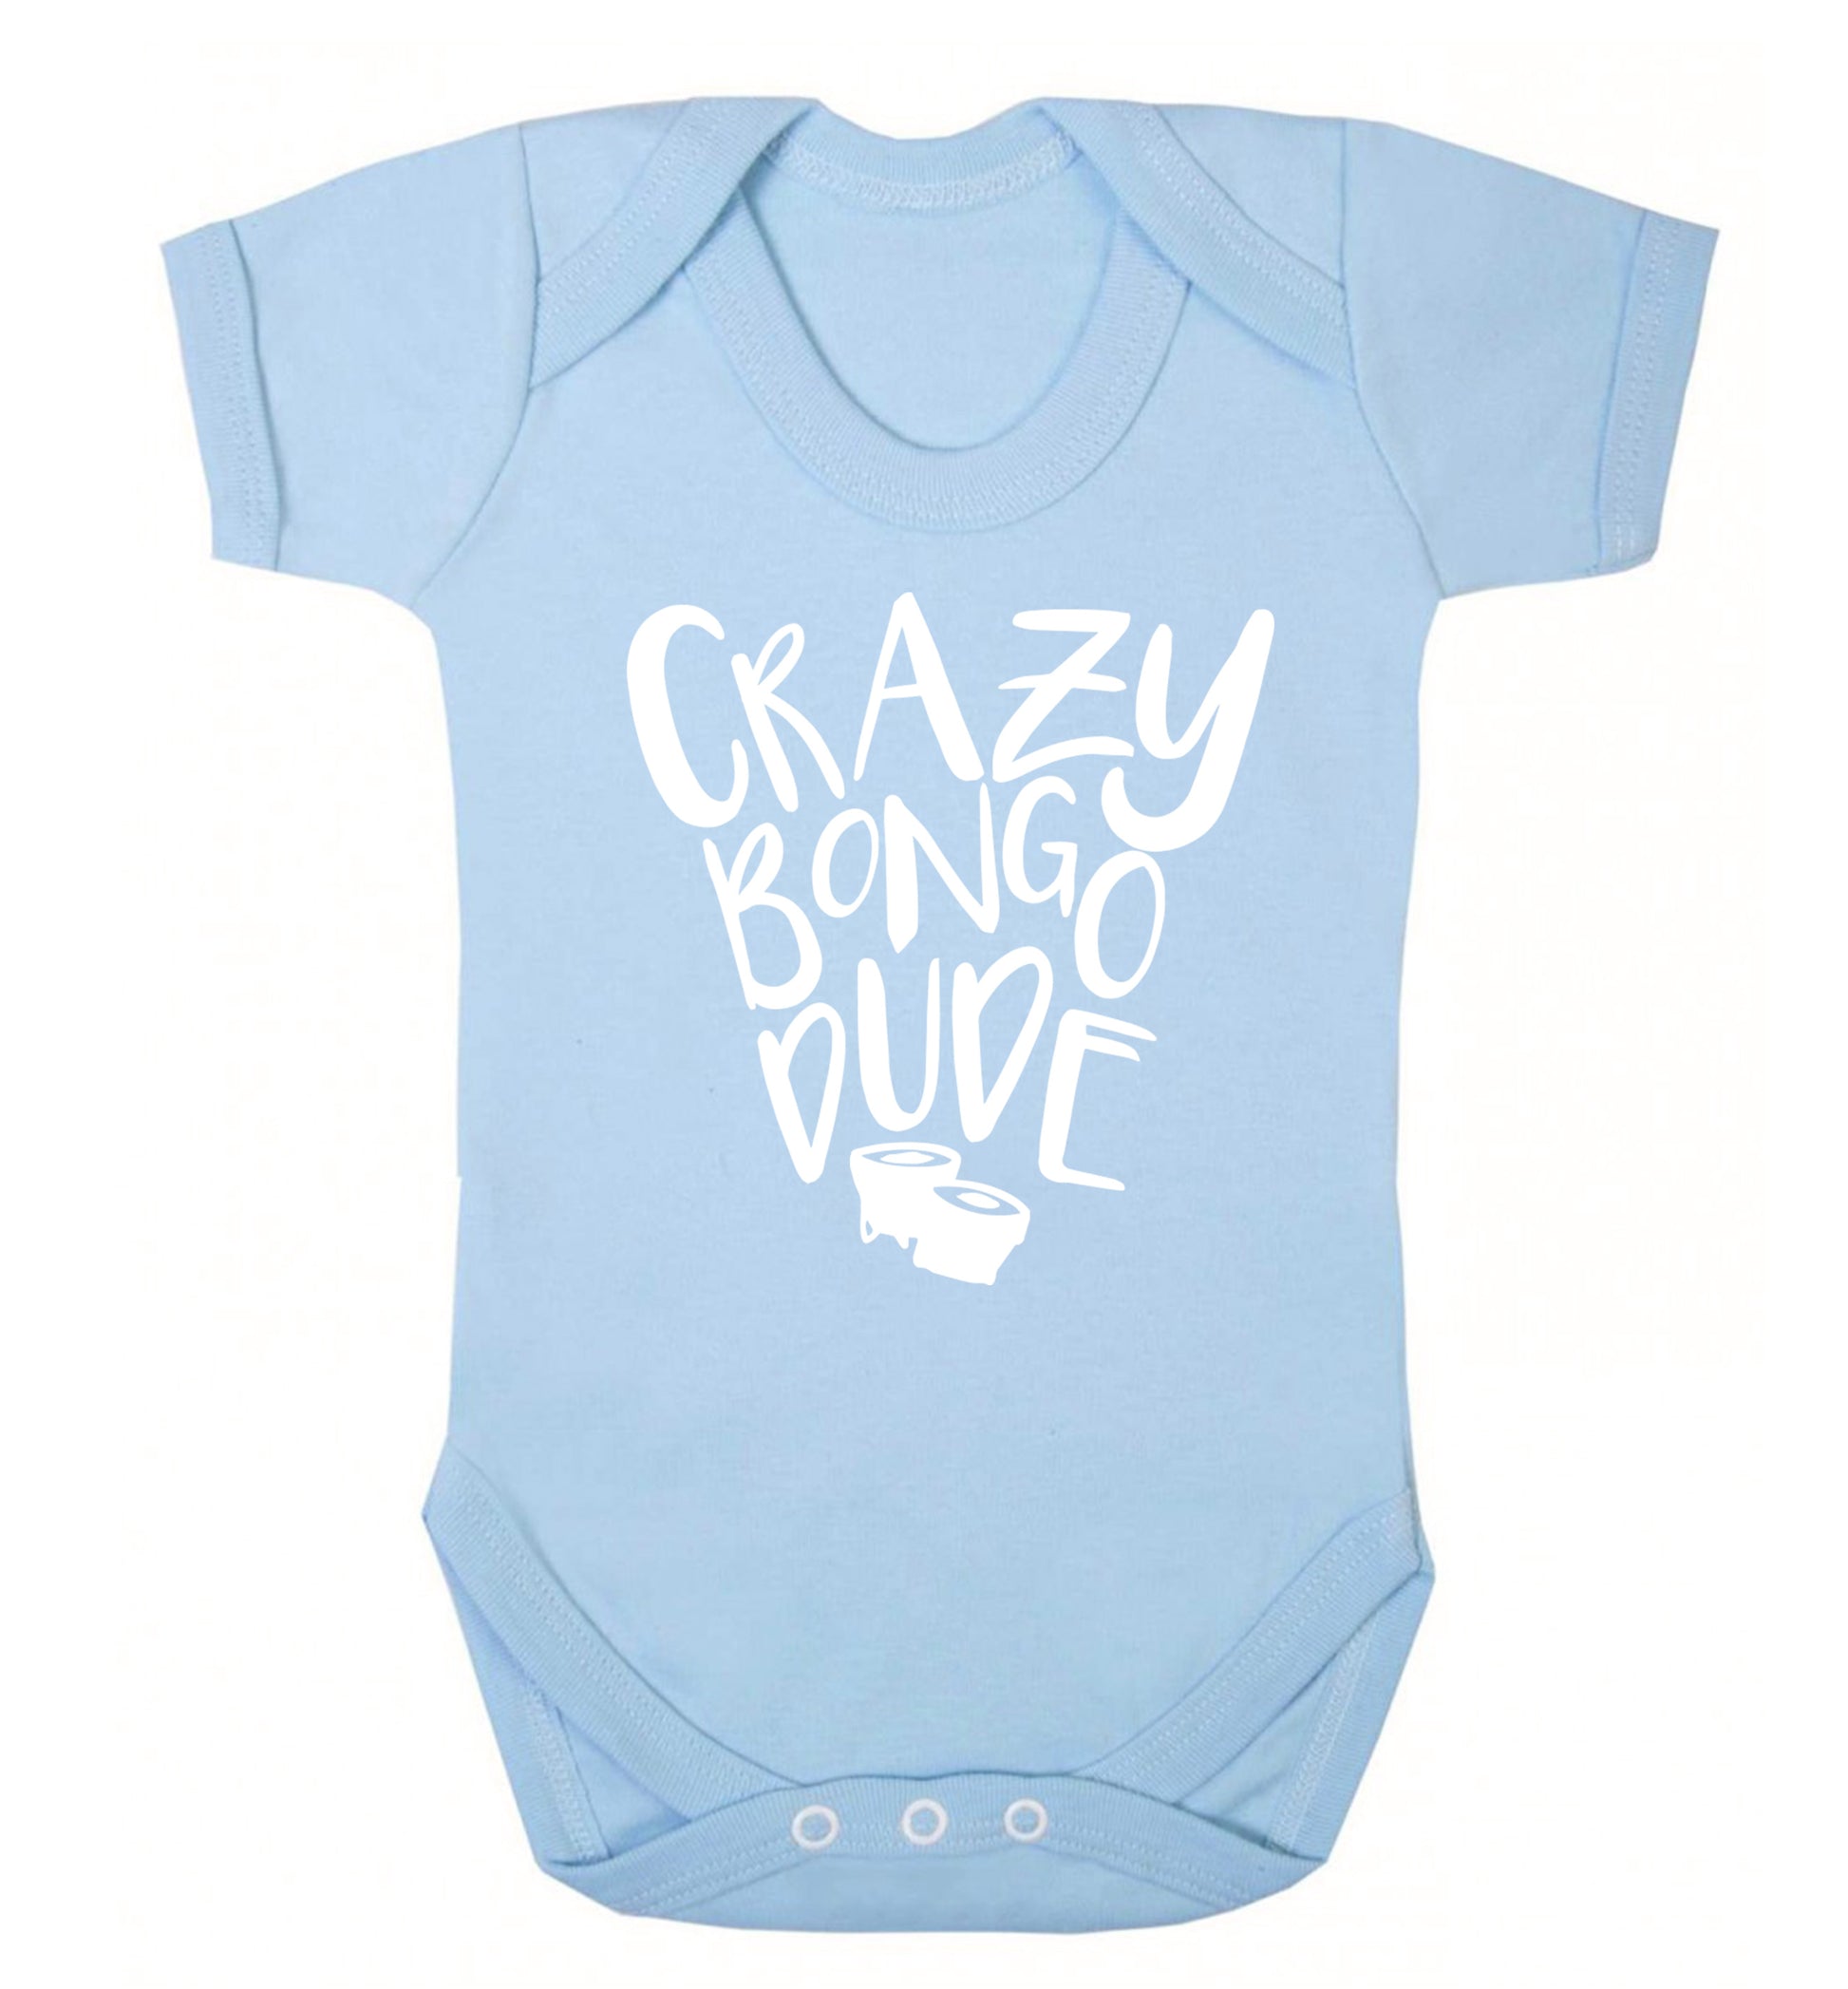 Crazy bongo dude Baby Vest pale blue 18-24 months